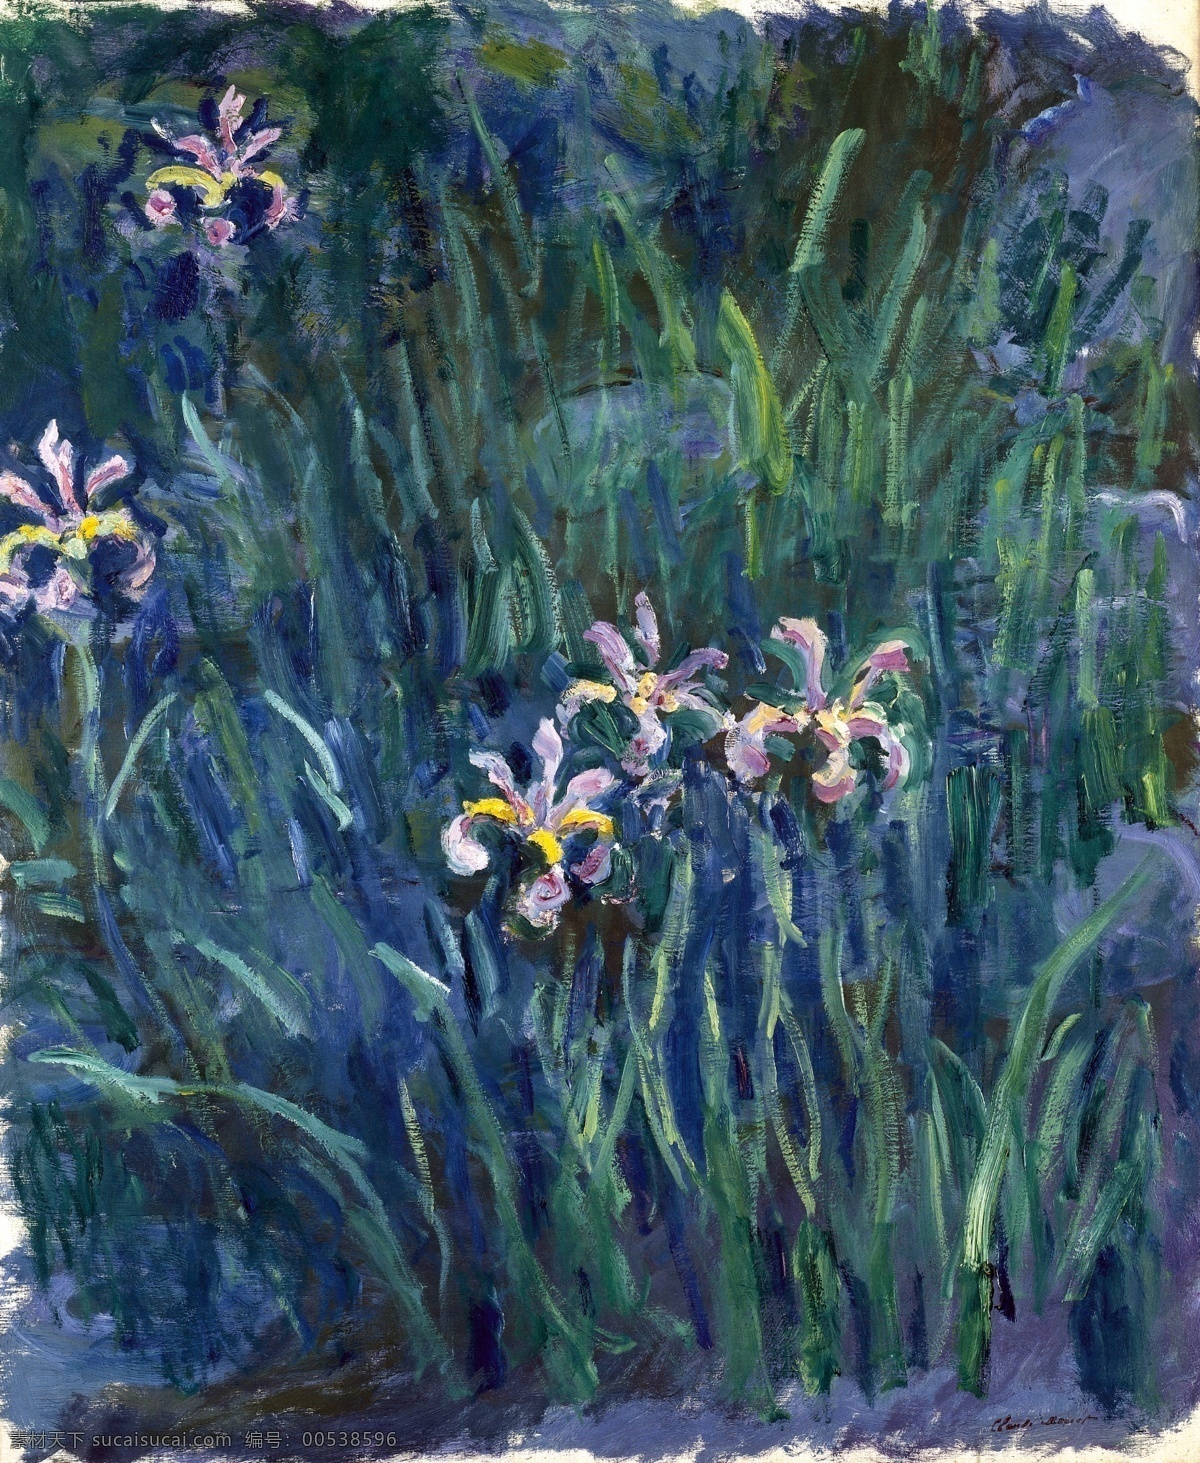 风景 建筑 田园 植物 水景 印象 画派 写实主义 油画 装饰画 iris 装饰素材